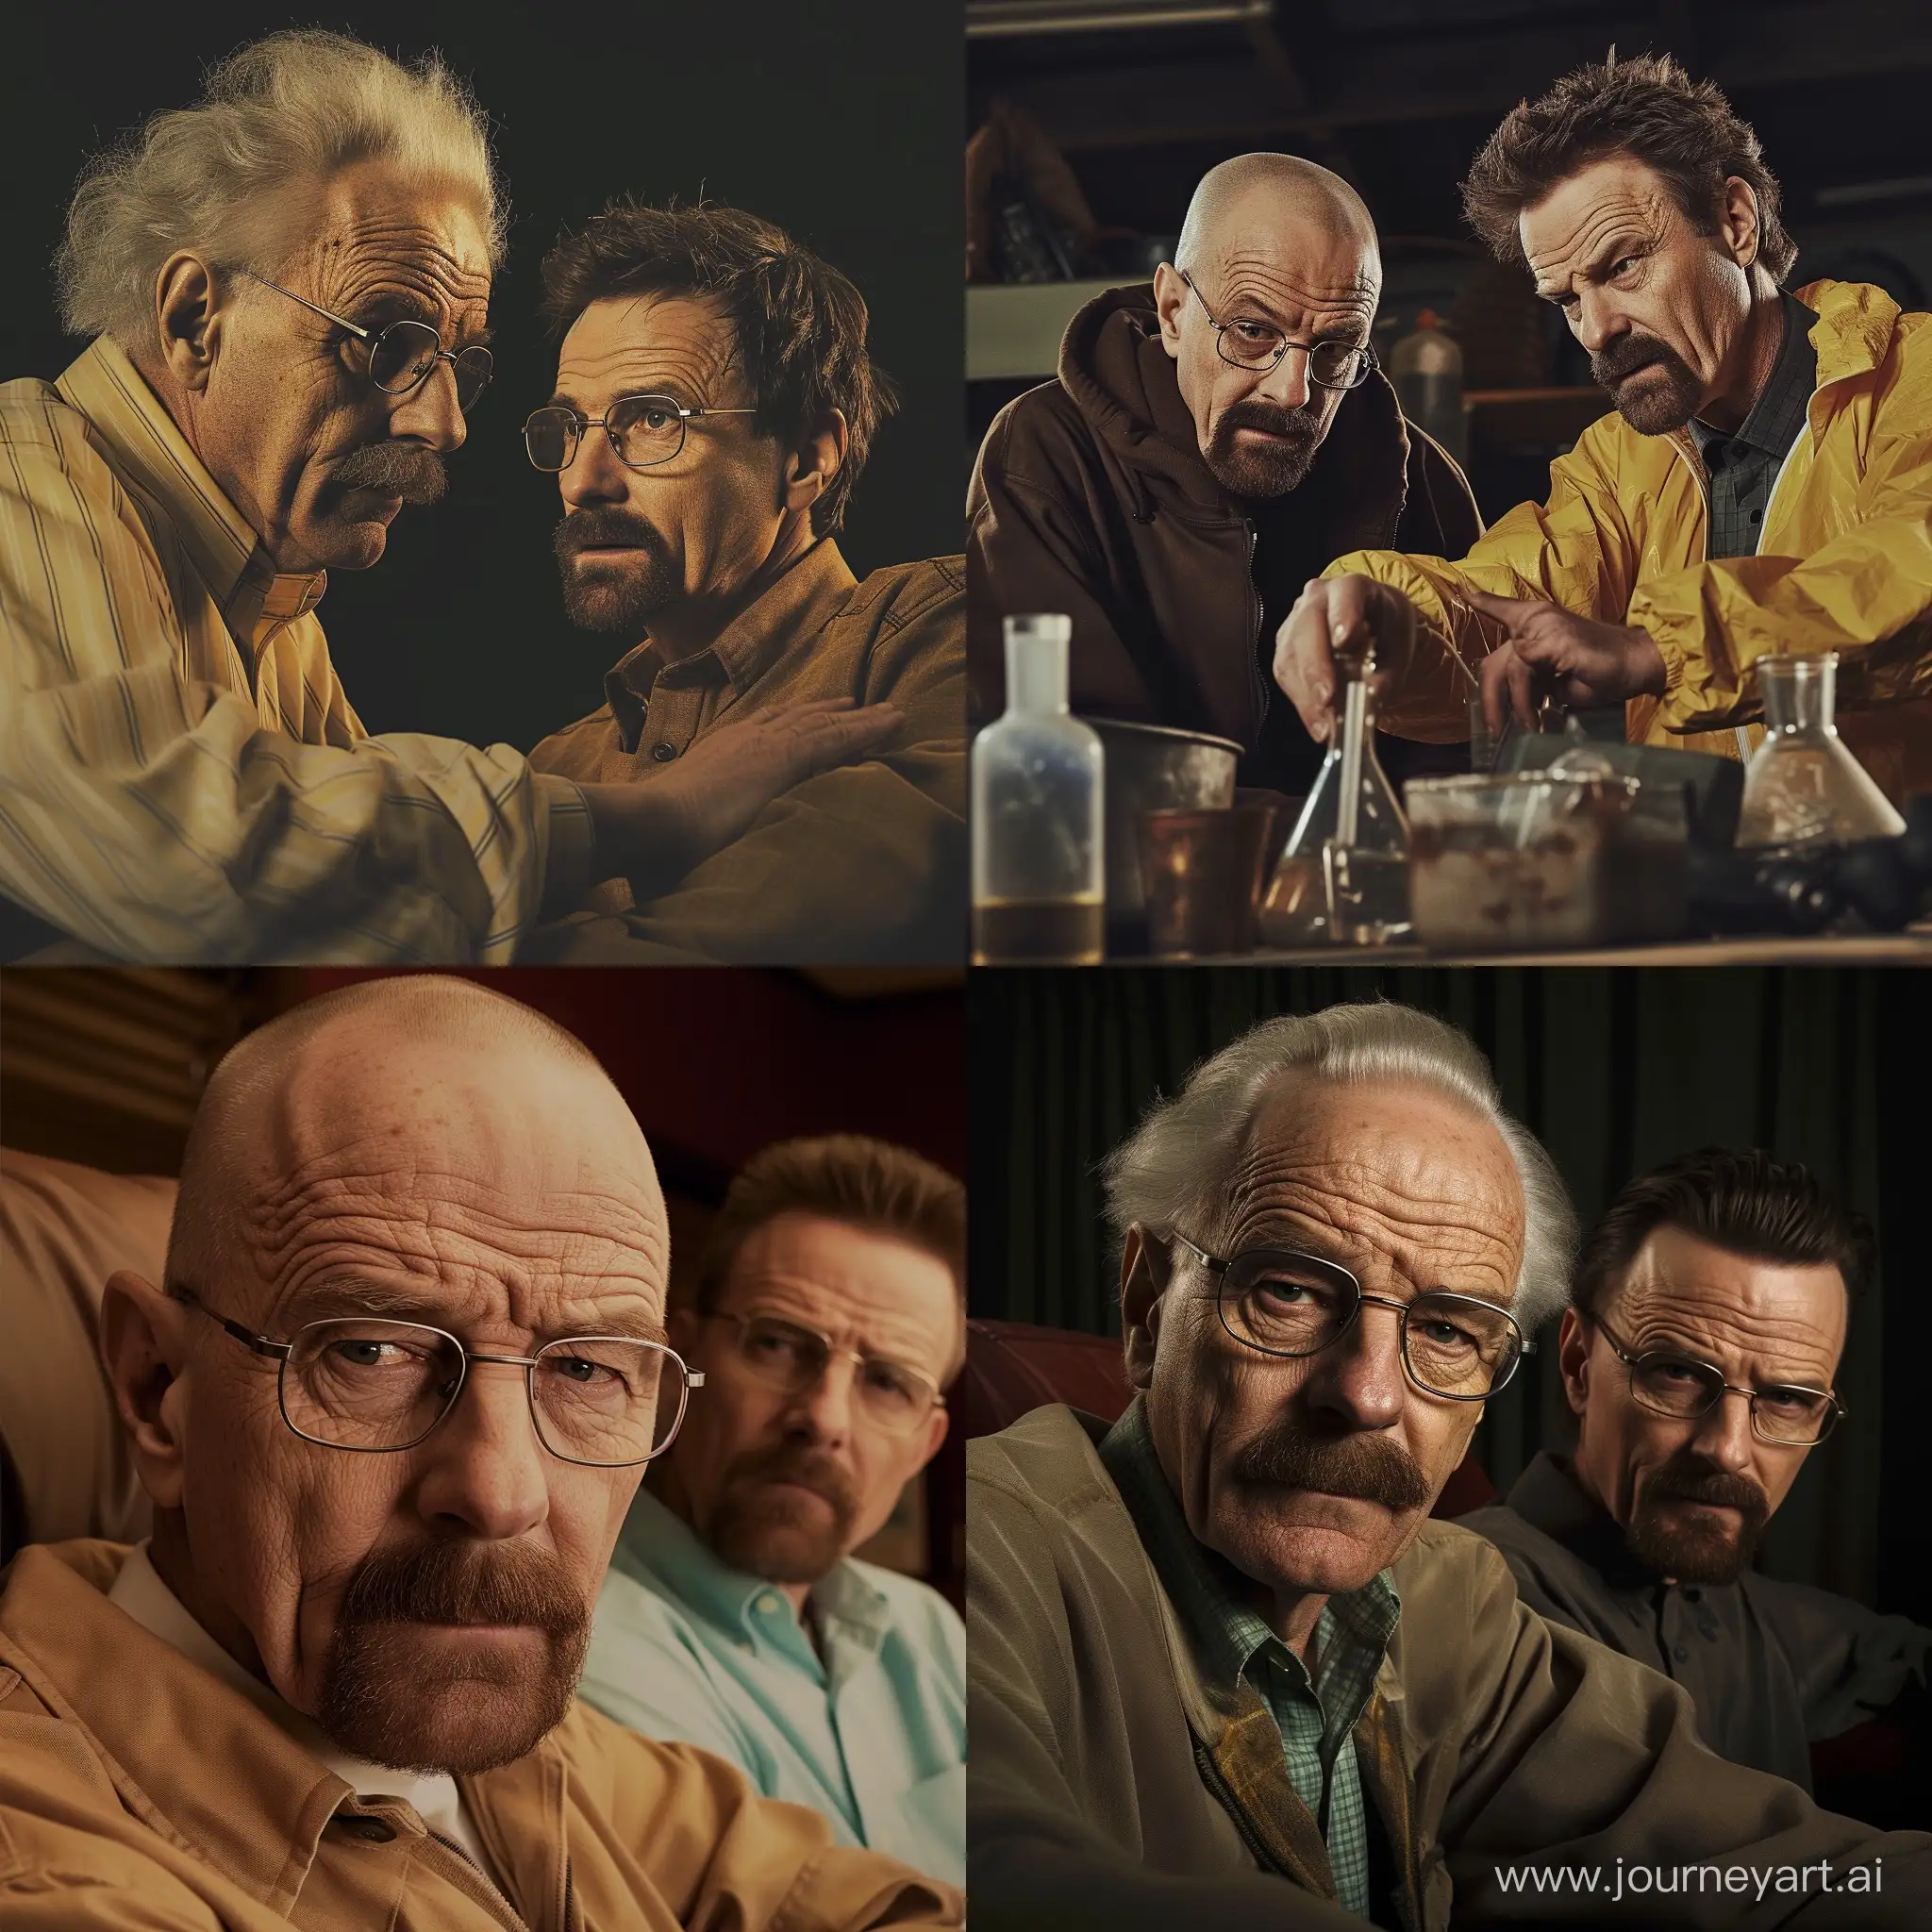 Genius-Collaboration-Albert-Einstein-Assisting-Walter-White-in-Breaking-Bad-Scene